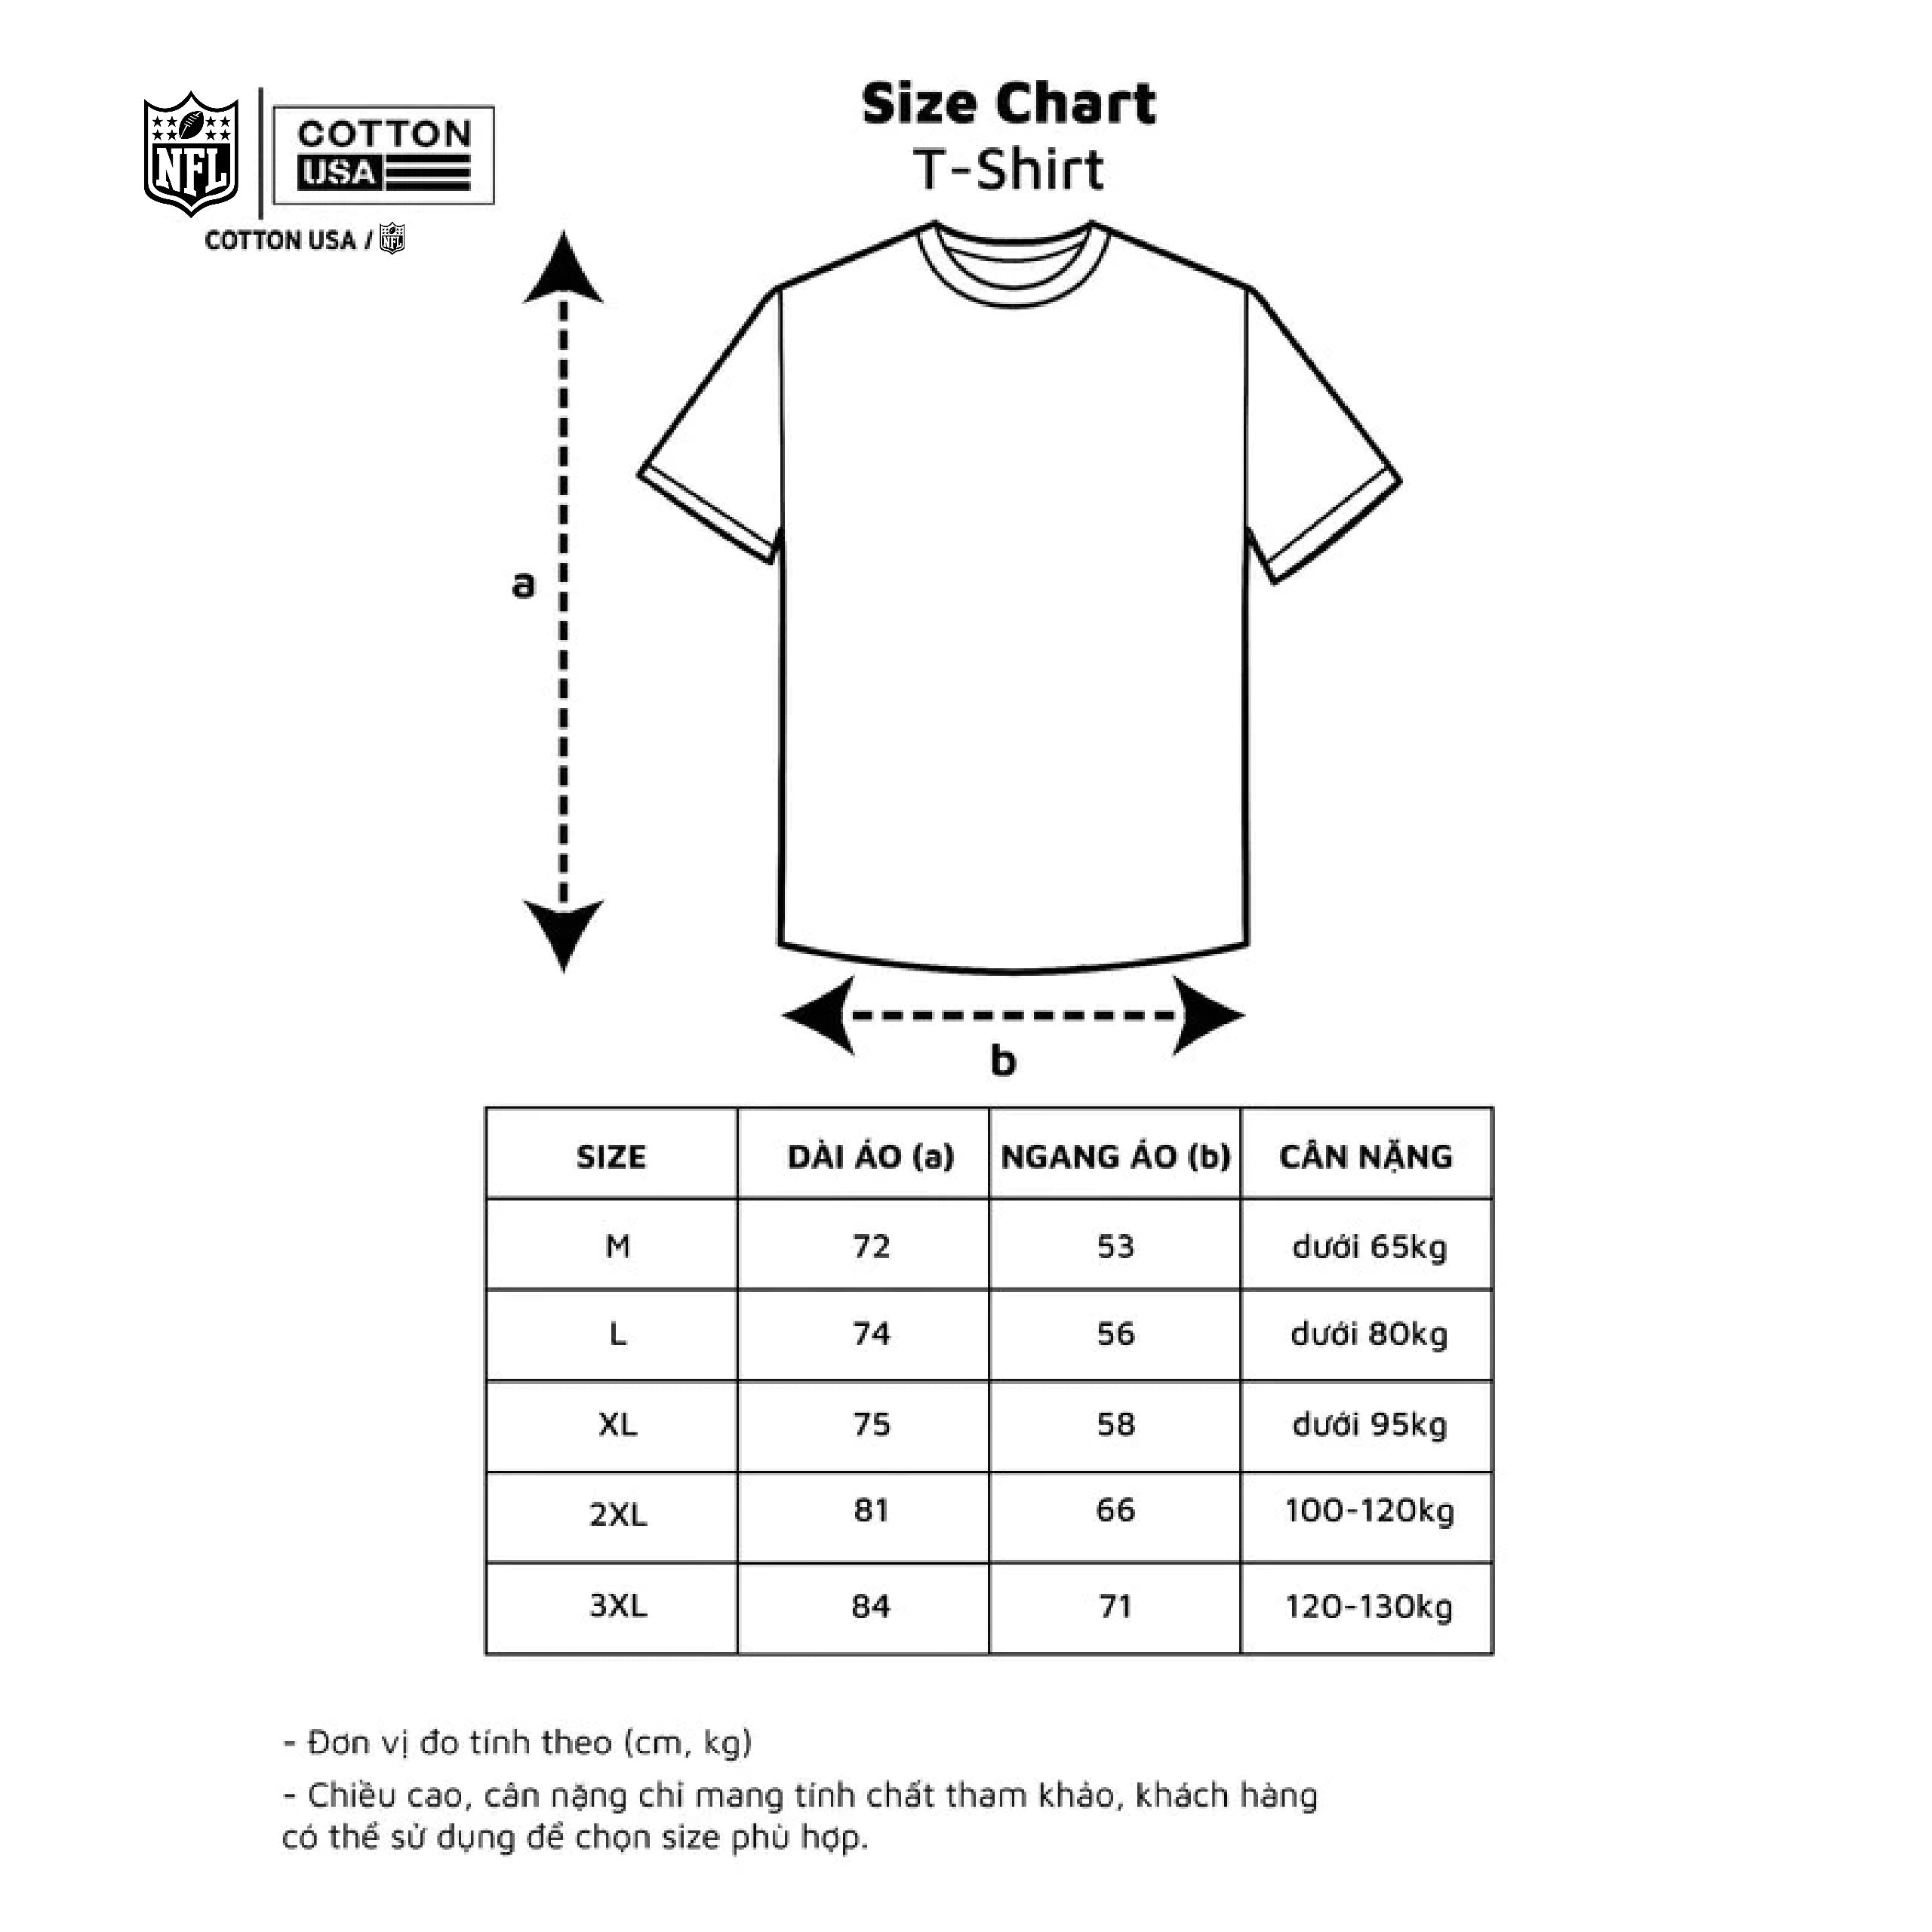 NFL Super Bowl XXXIII T-Shirt